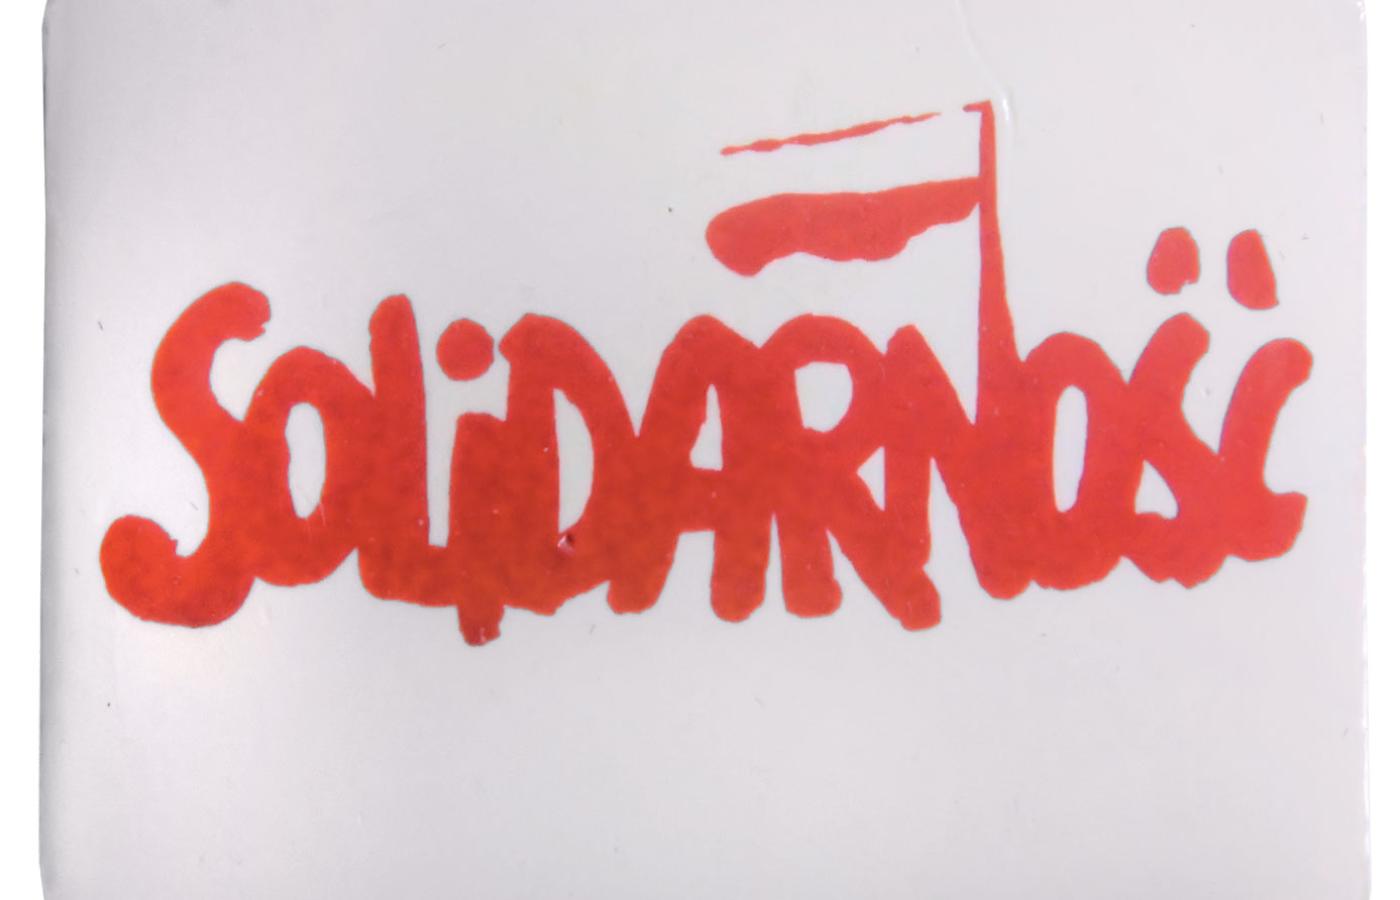 Znaczek z logo Solidarności autorstwa Jerzego Janiszewskiego.